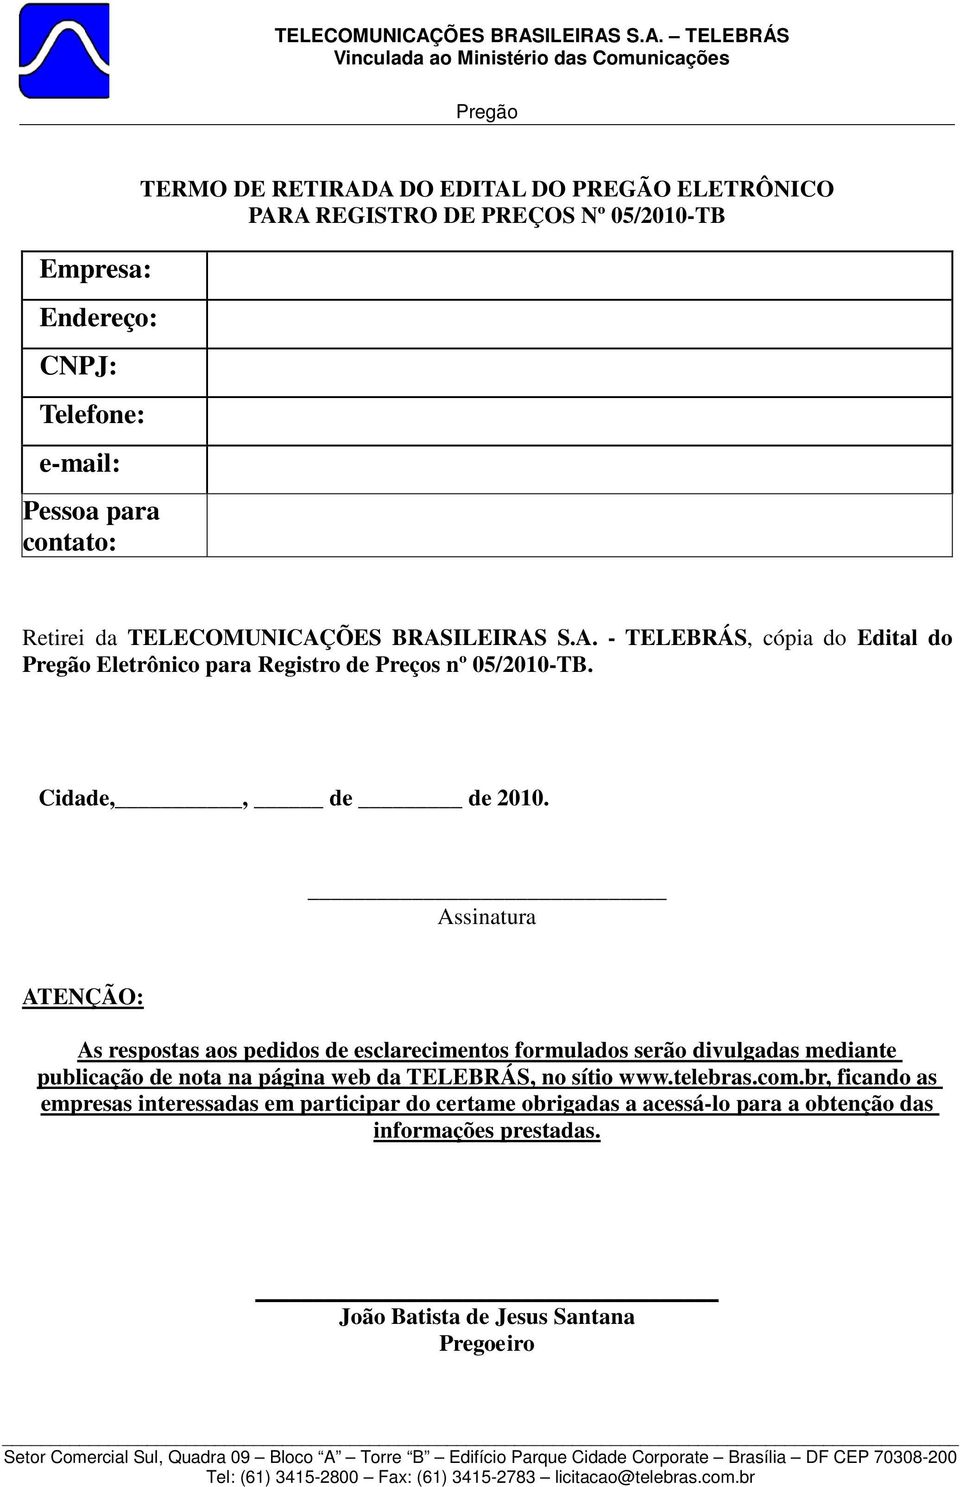 Assinatura ATENÇÃO: As respostas aos pedidos de esclarecimentos formulados serão divulgadas mediante publicação de nota na página web da TELEBRÁS, no sítio www.telebras.com.